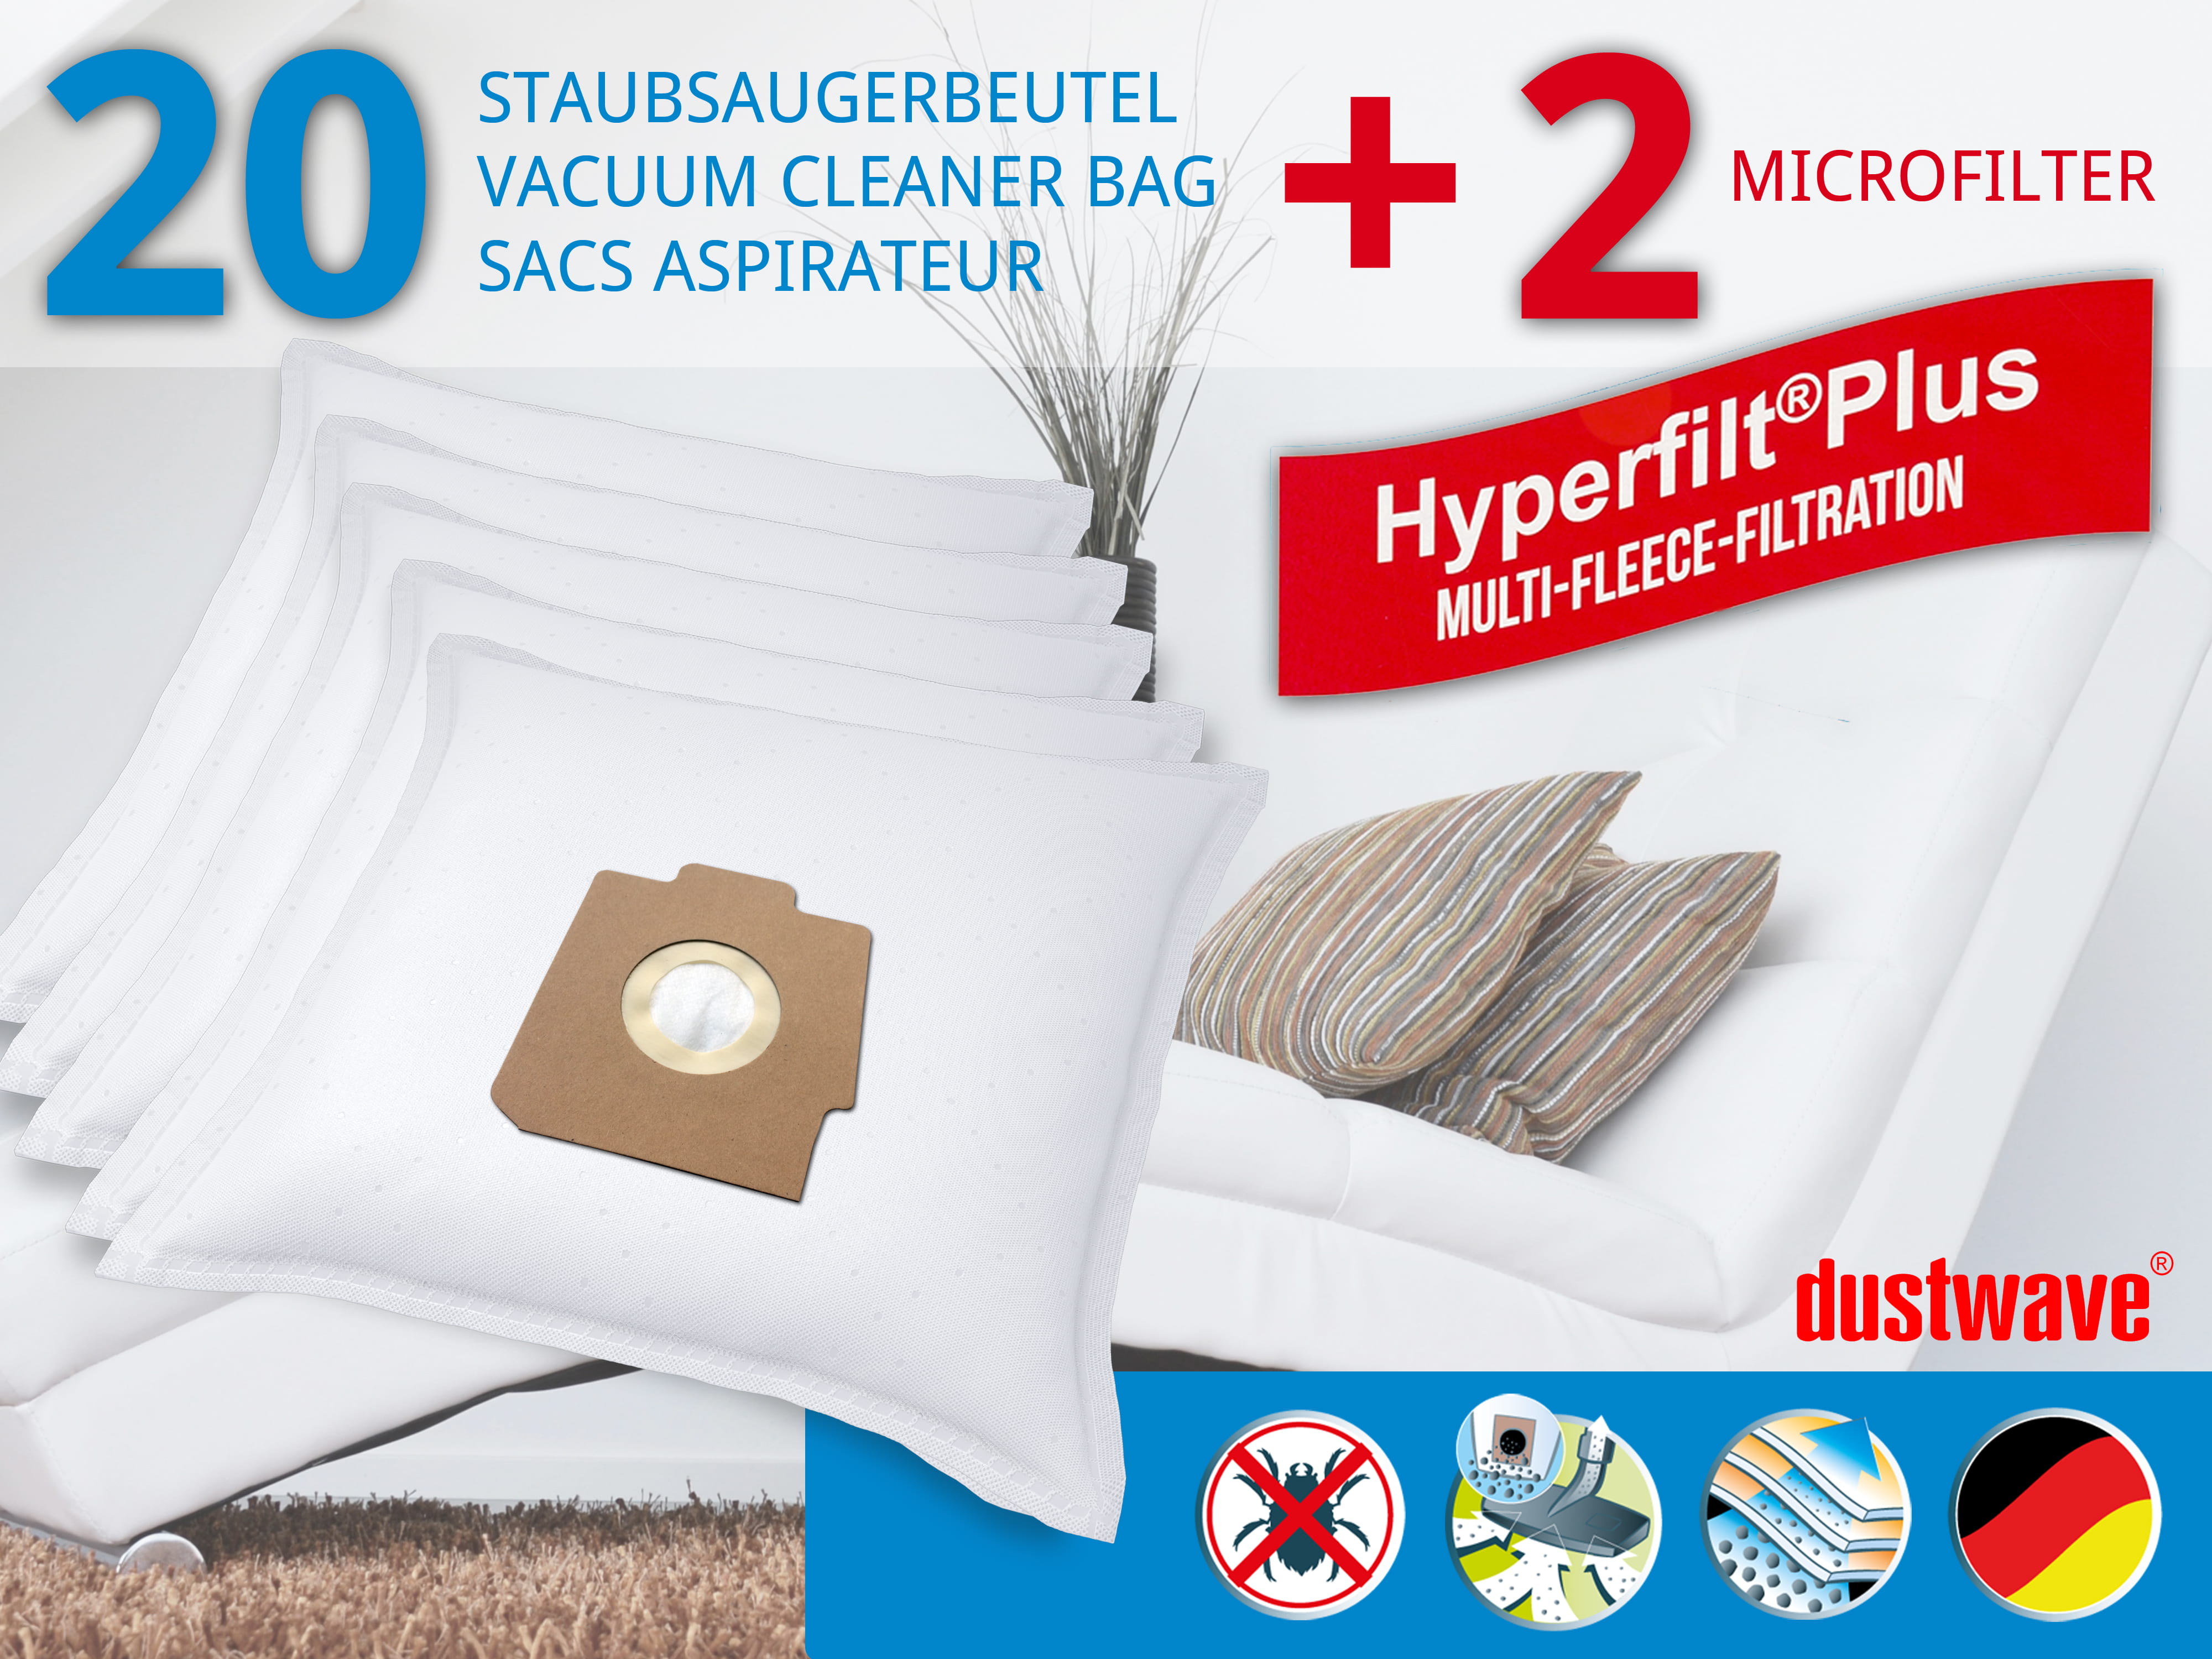 Dustwave® 20 Staubsaugerbeutel für Hoover S3644 091 / TRS3644091 - hocheffizient, mehrlagiges Mikrovlies mit Hygieneverschluss - Made in Germany